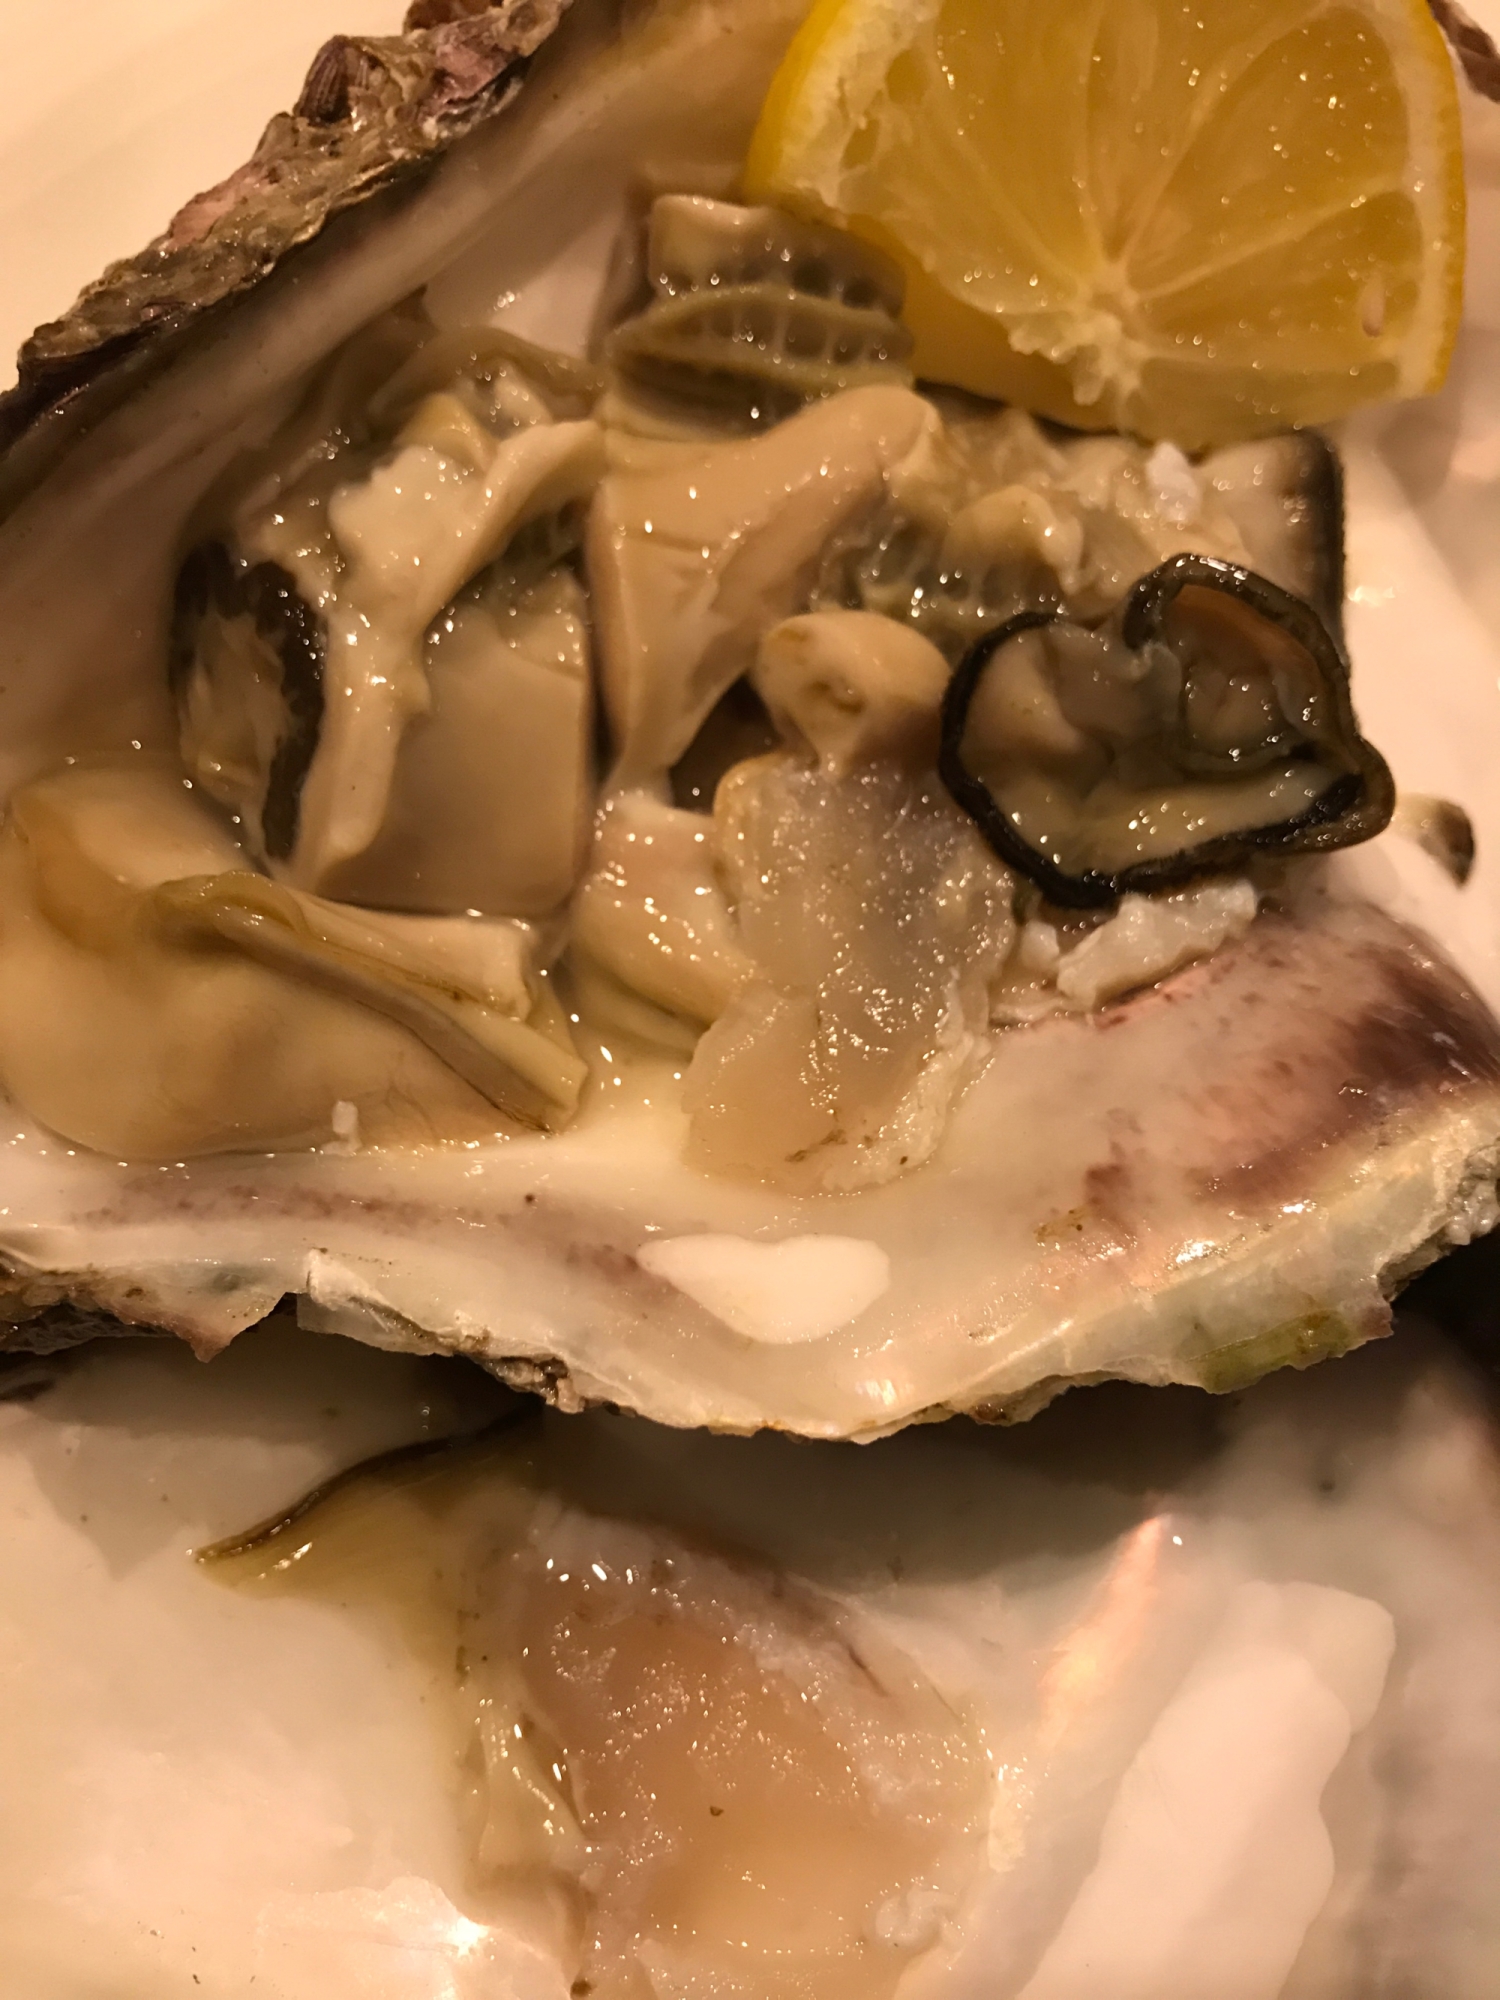 岩牡蠣の美味しい食べ方